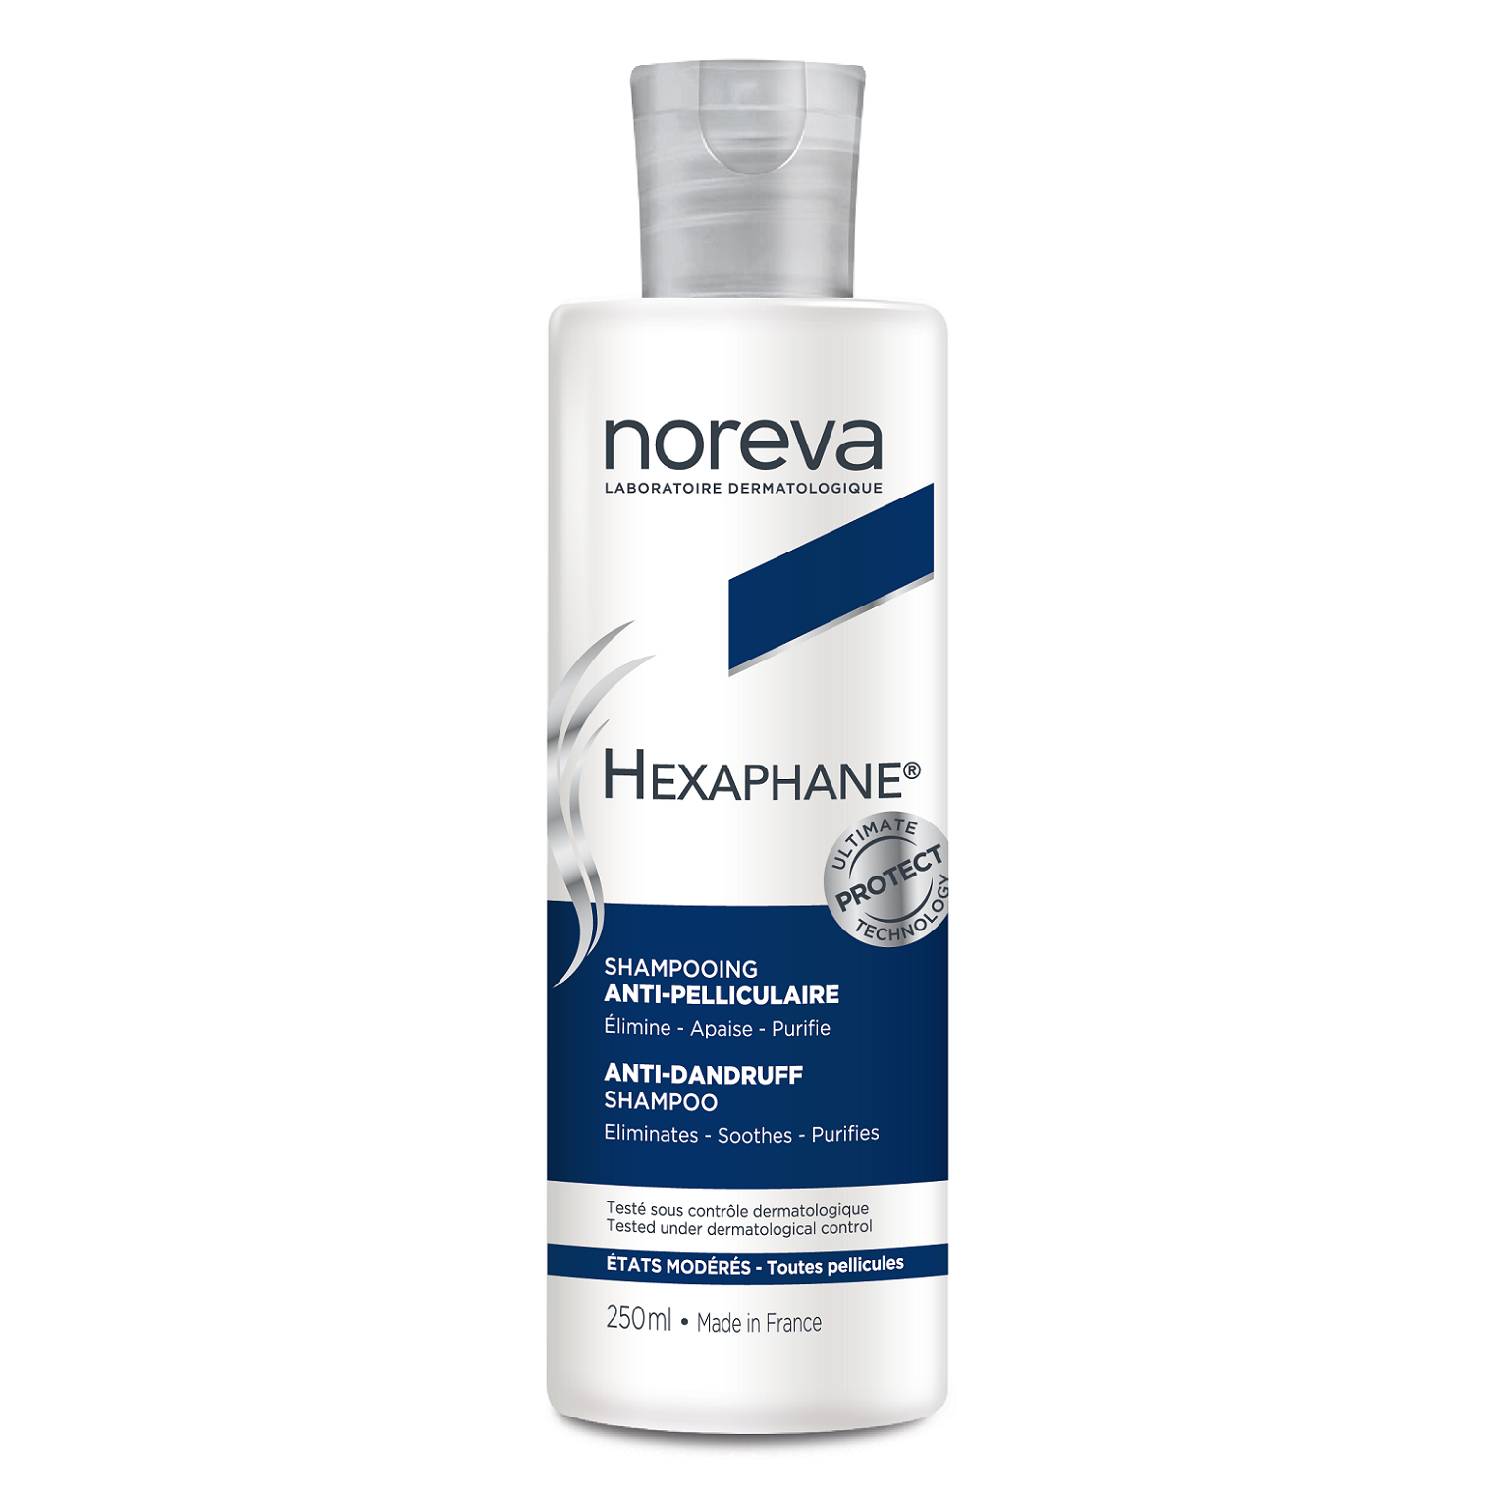 noreva шампунь для жирных волос oil control shampoo 250 мл noreva hexaphane Noreva Шампунь против перхоти Anti-Dandruff Shampoo, 250 мл (Noreva, Hexaphane)